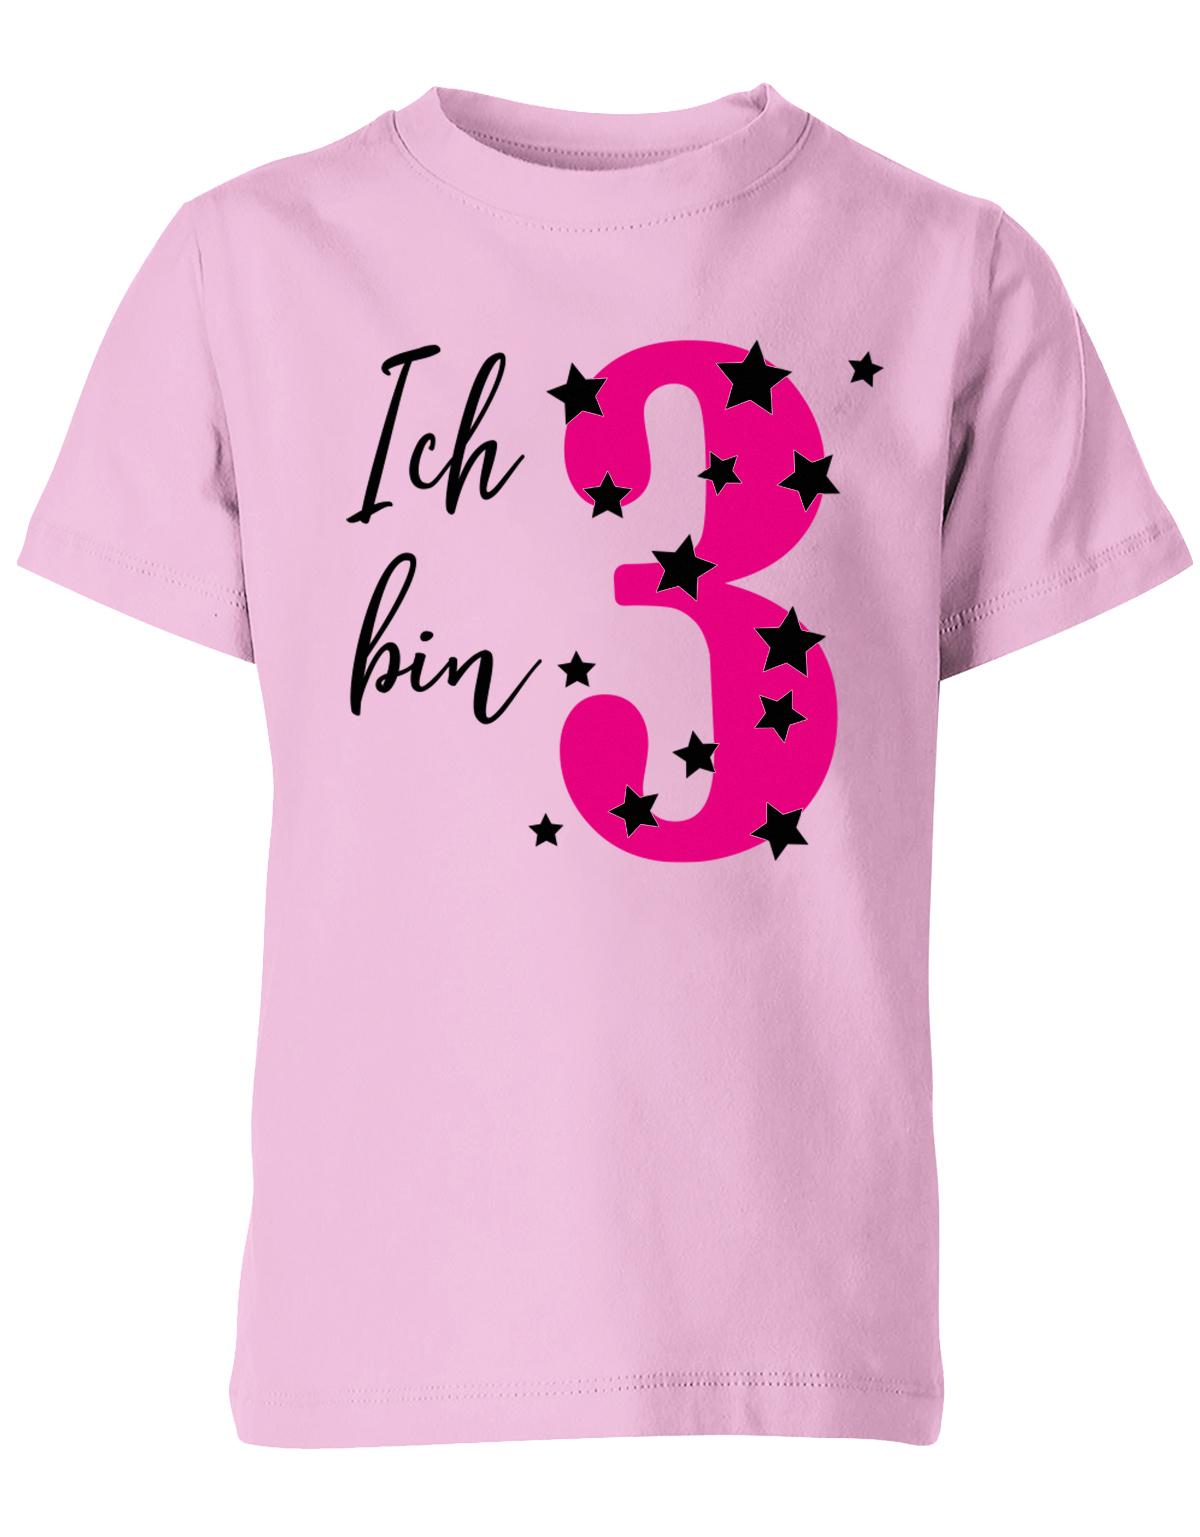 ich-bin-3-sterne-sternchen-geburtstag-kinder-shirt-rosa